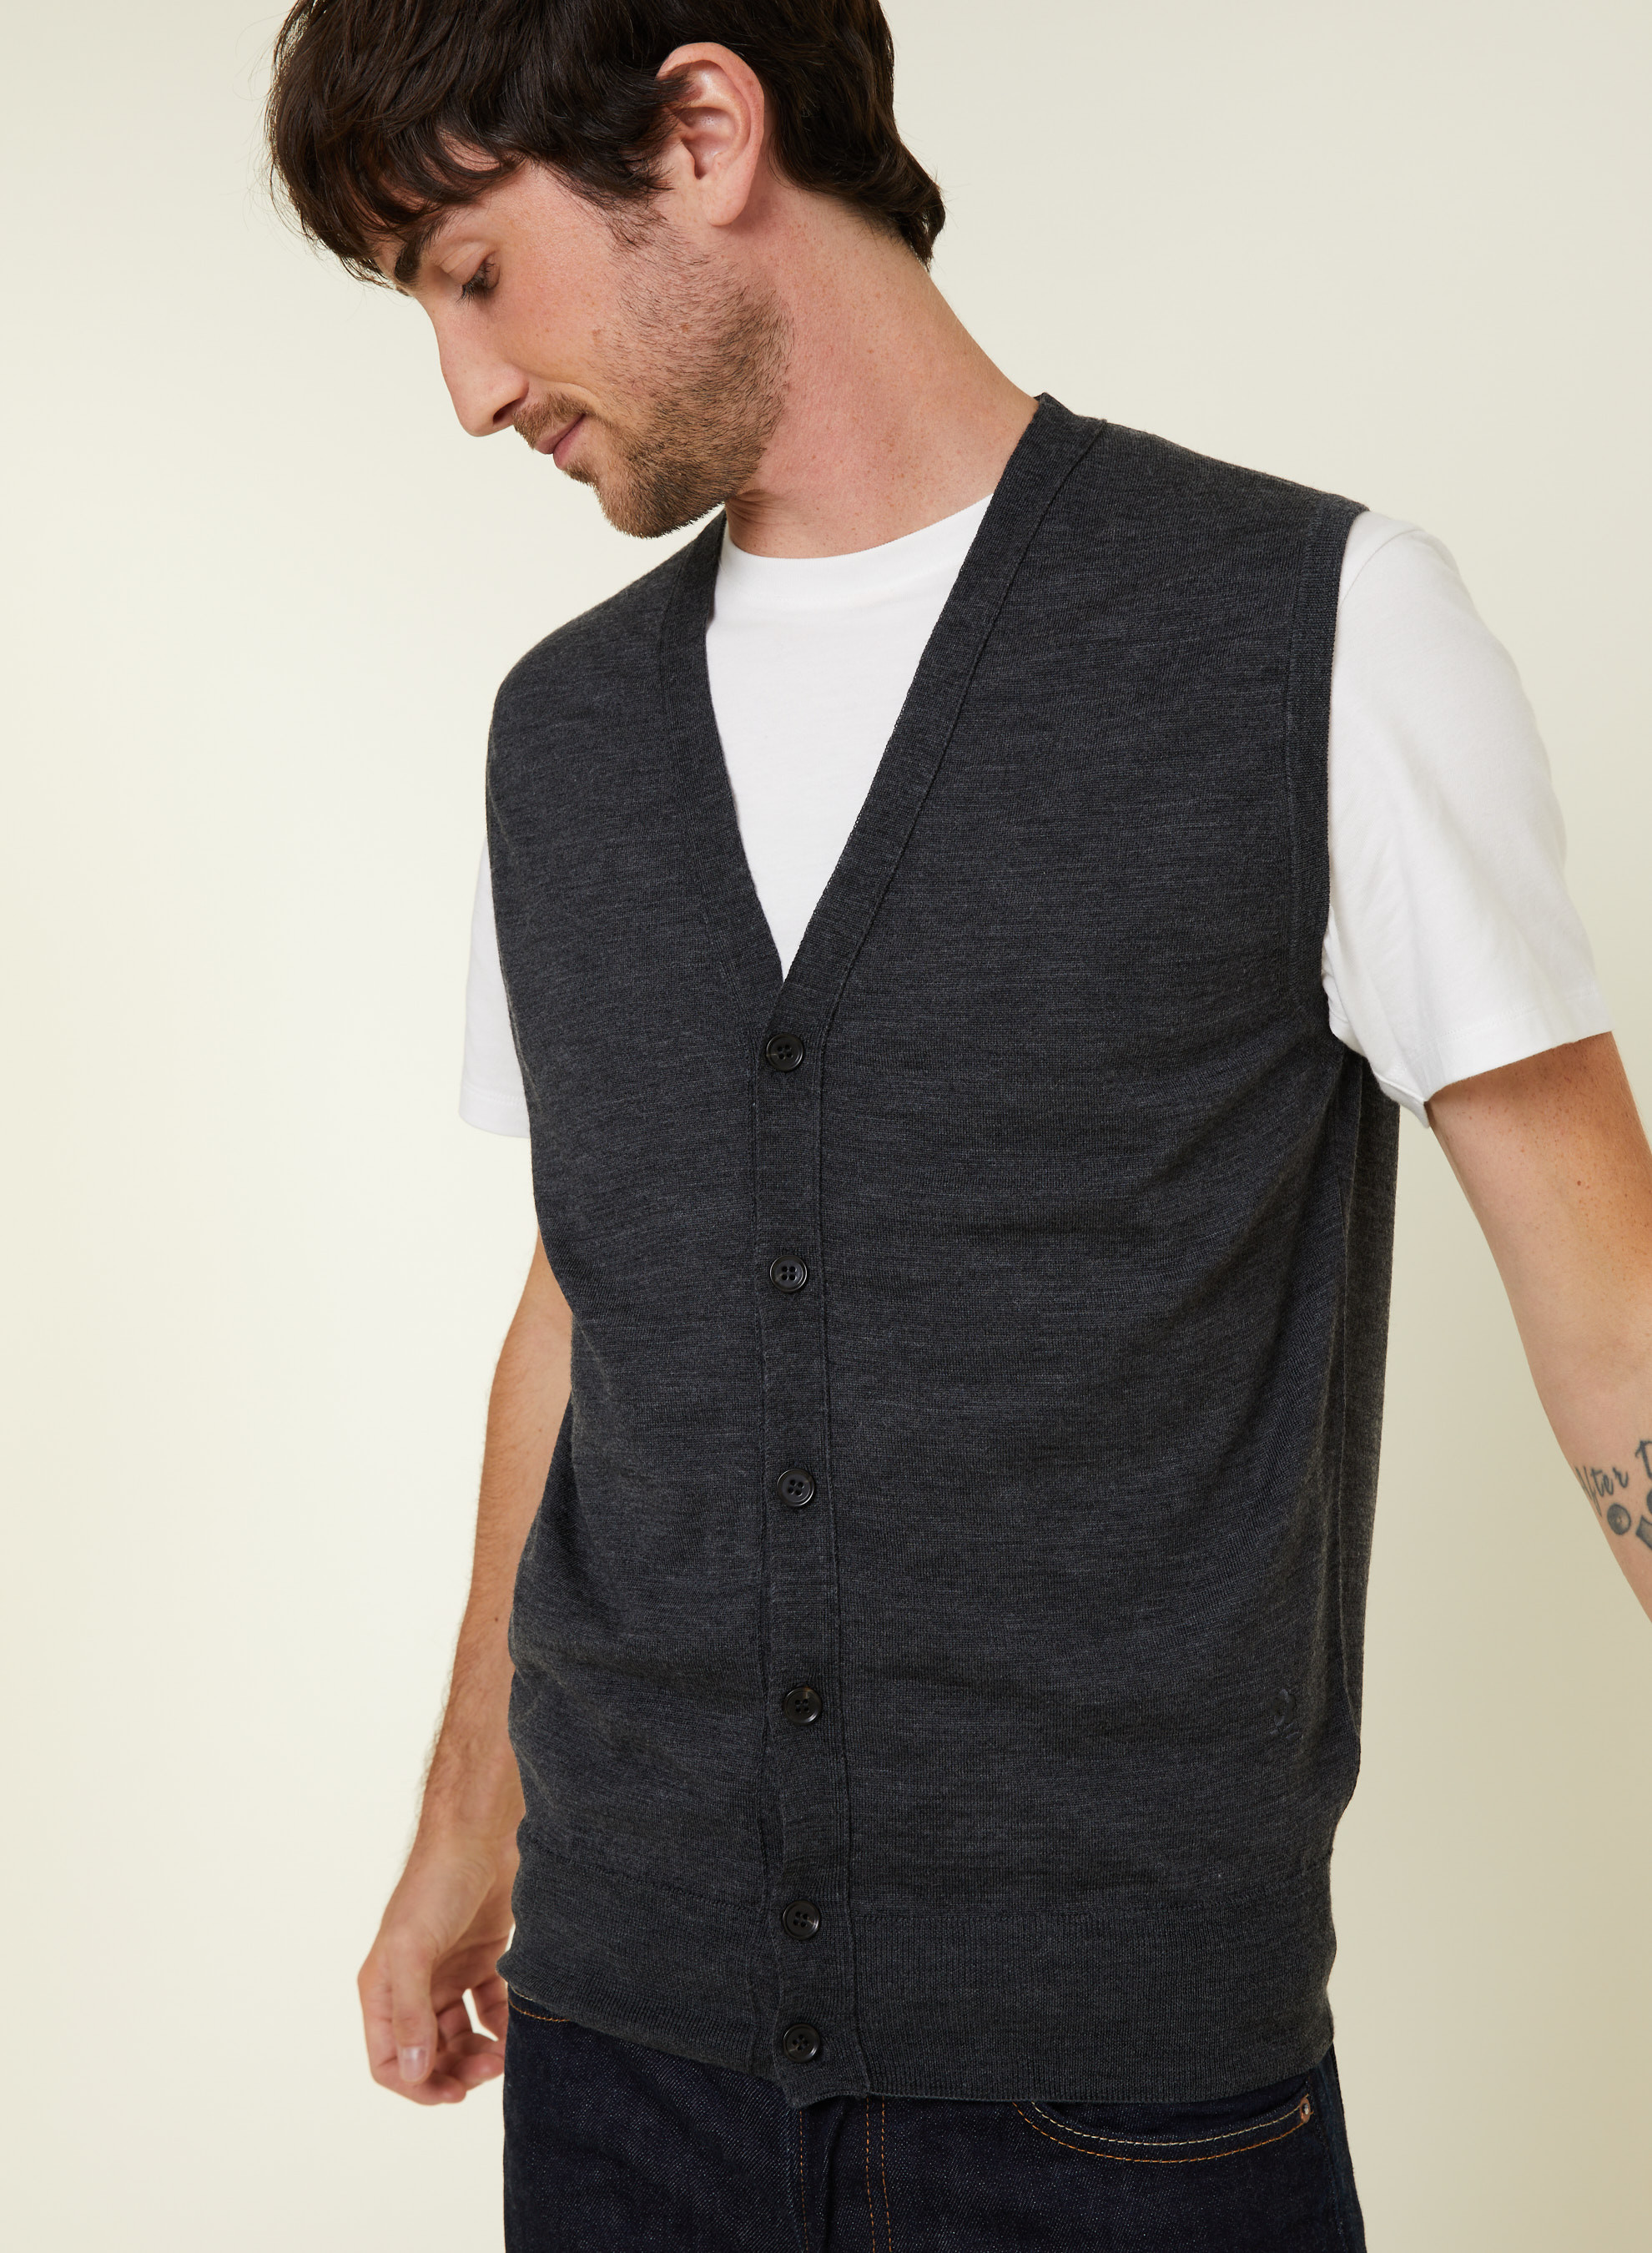 https://us.montagut.com/30411/sleeveless-vest-with-logo-in-merino-wool-ernardo.jpg